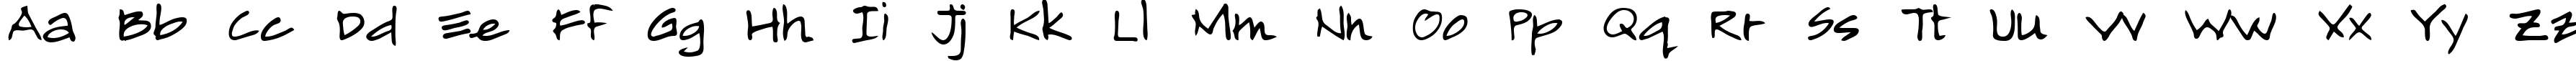 Пример написания английского алфавита шрифтом Almagro Regular